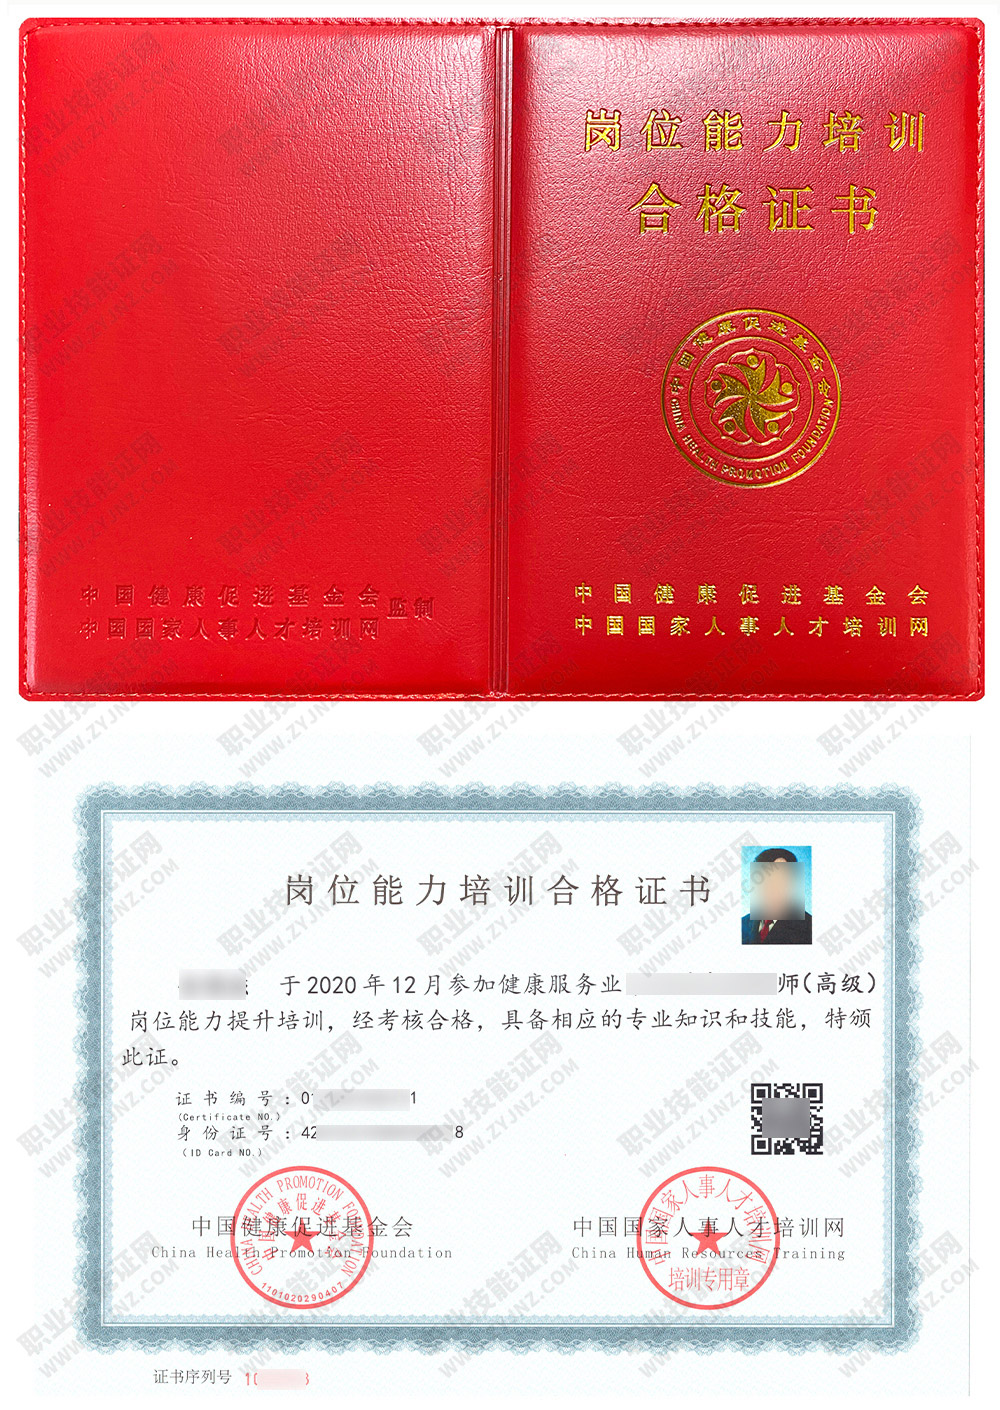 中国国家人事人才培训网 健康管理师 岗位能力培训合格证书